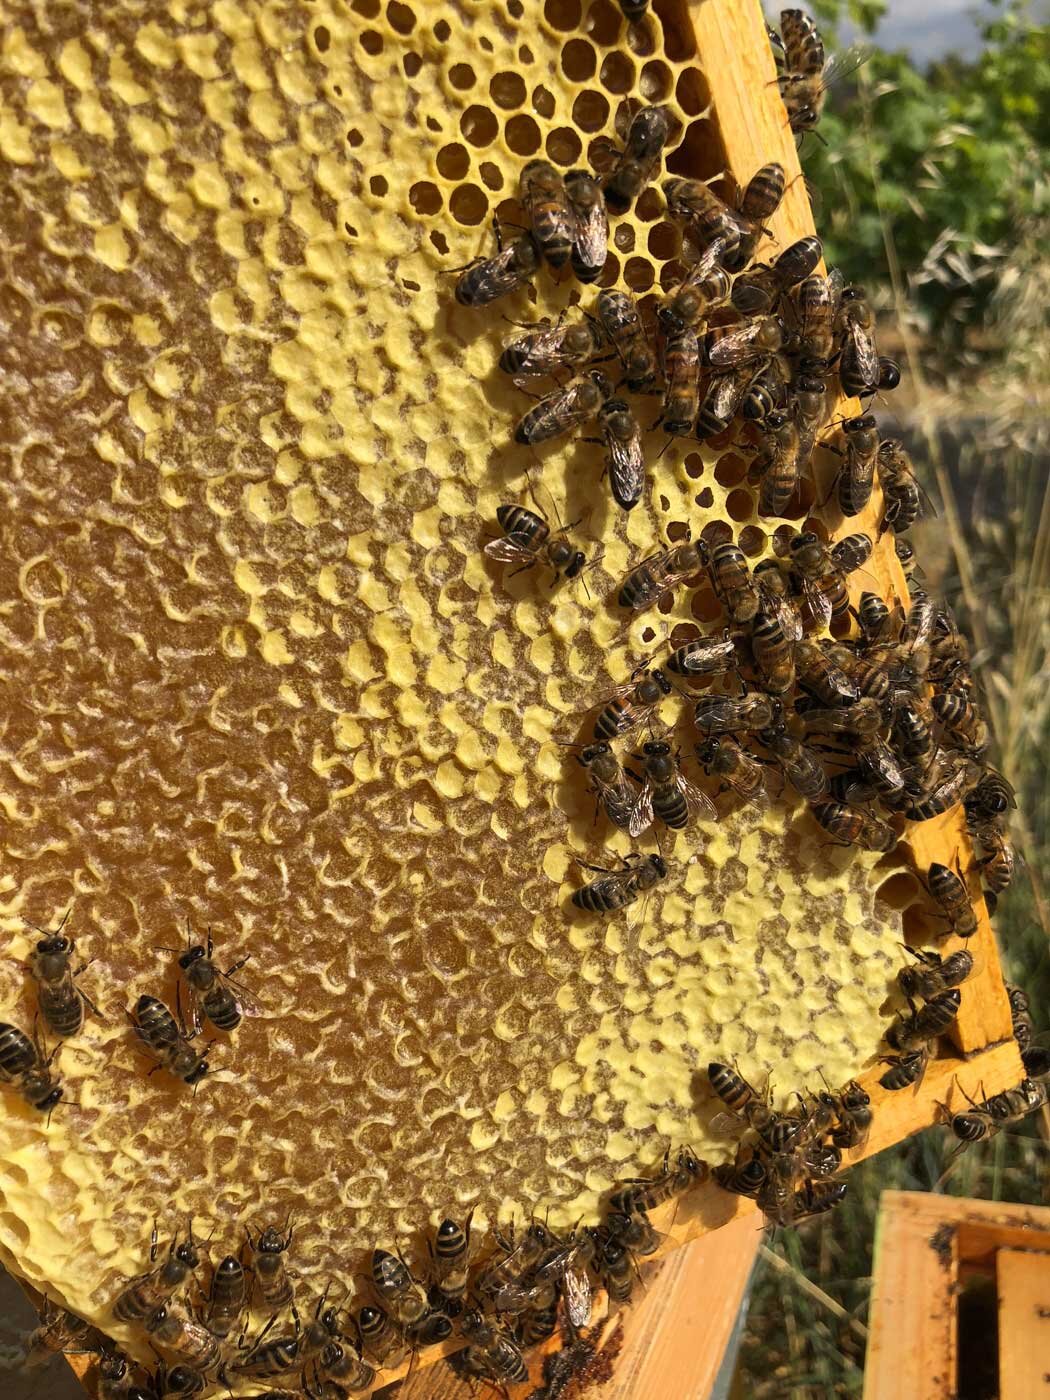  bees, honey beekeeping sicily elios